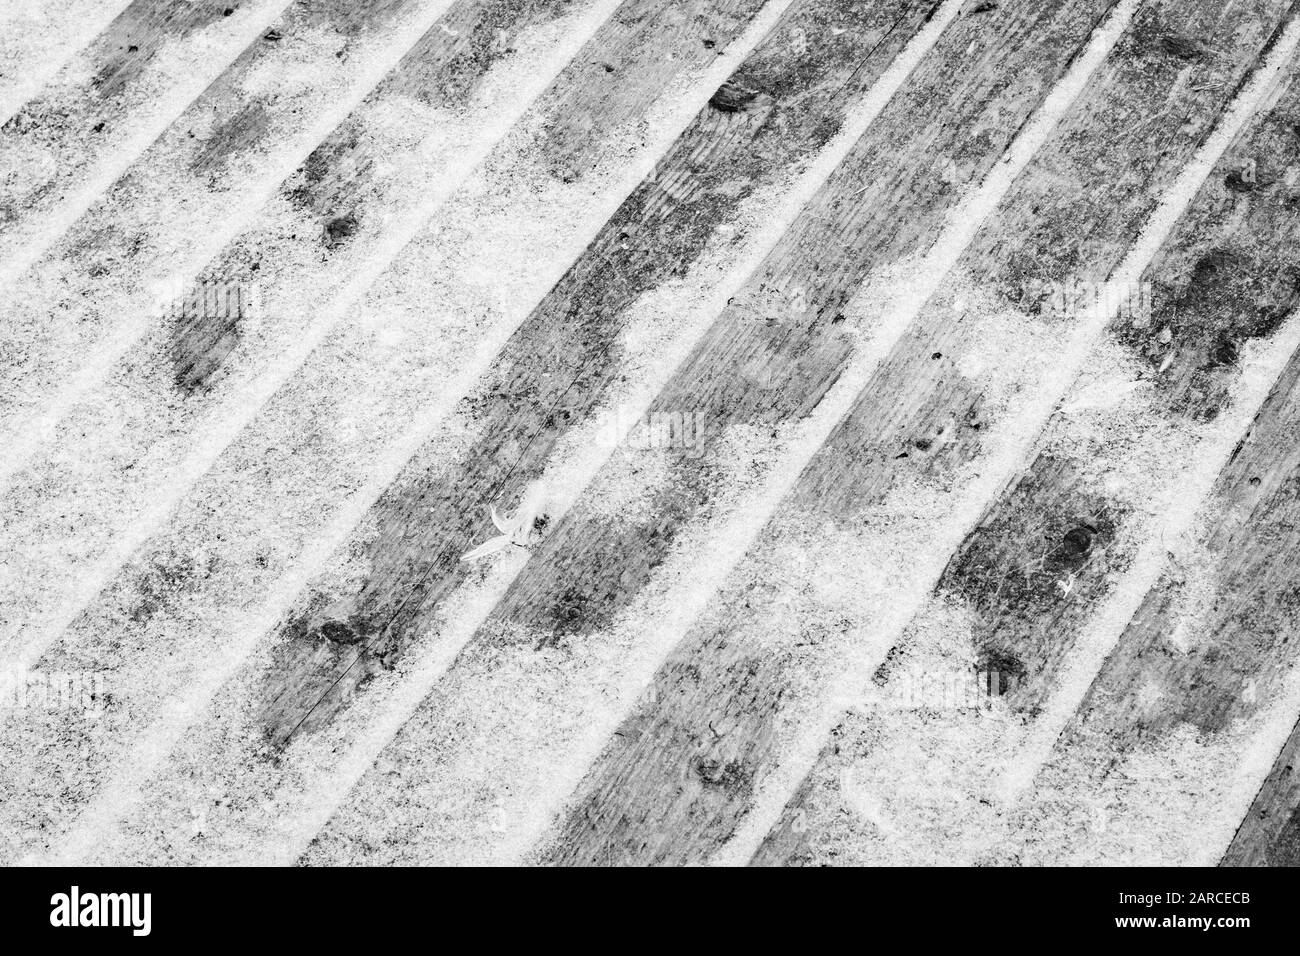 Pizarras de madera de palets cubiertas de nieve en blanco y negro en espera de reciclaje. Clima de invierno y escalofríos, clima frío, clima frío de temporada, frío helado. Foto de stock